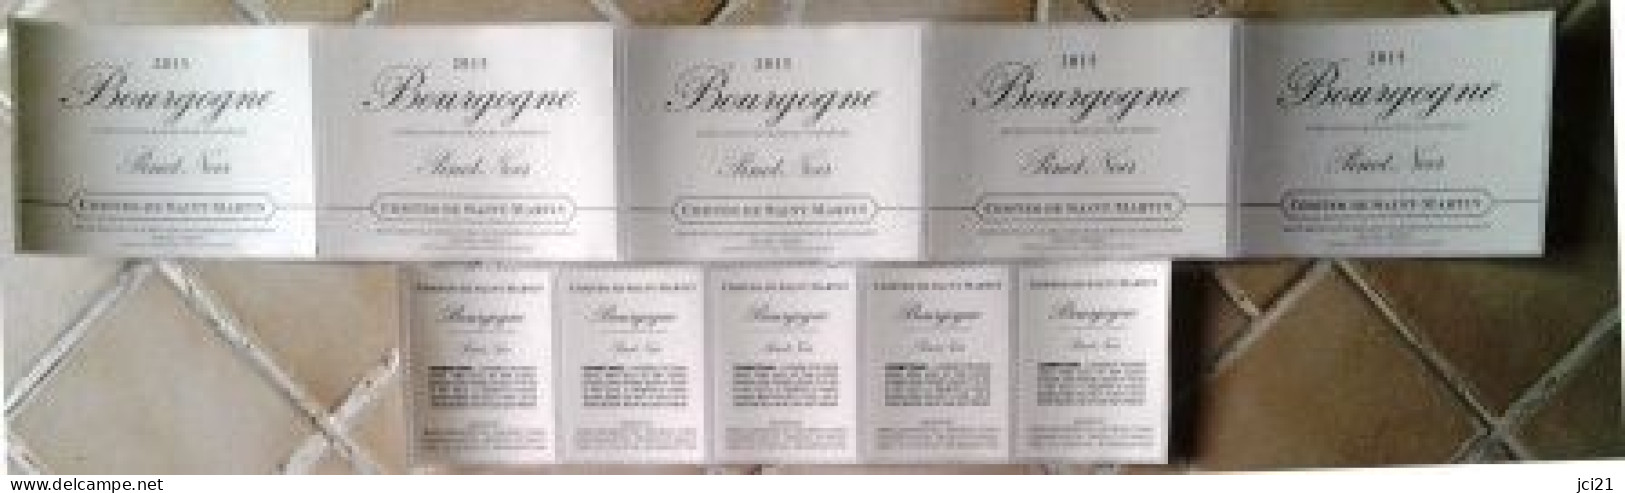 Lot De 5 étiquettes Contre étiquettes " Bourgogne PINOT NOIR 2015 " Comtes De St Martin Beaune [_ev296] - Bourgogne